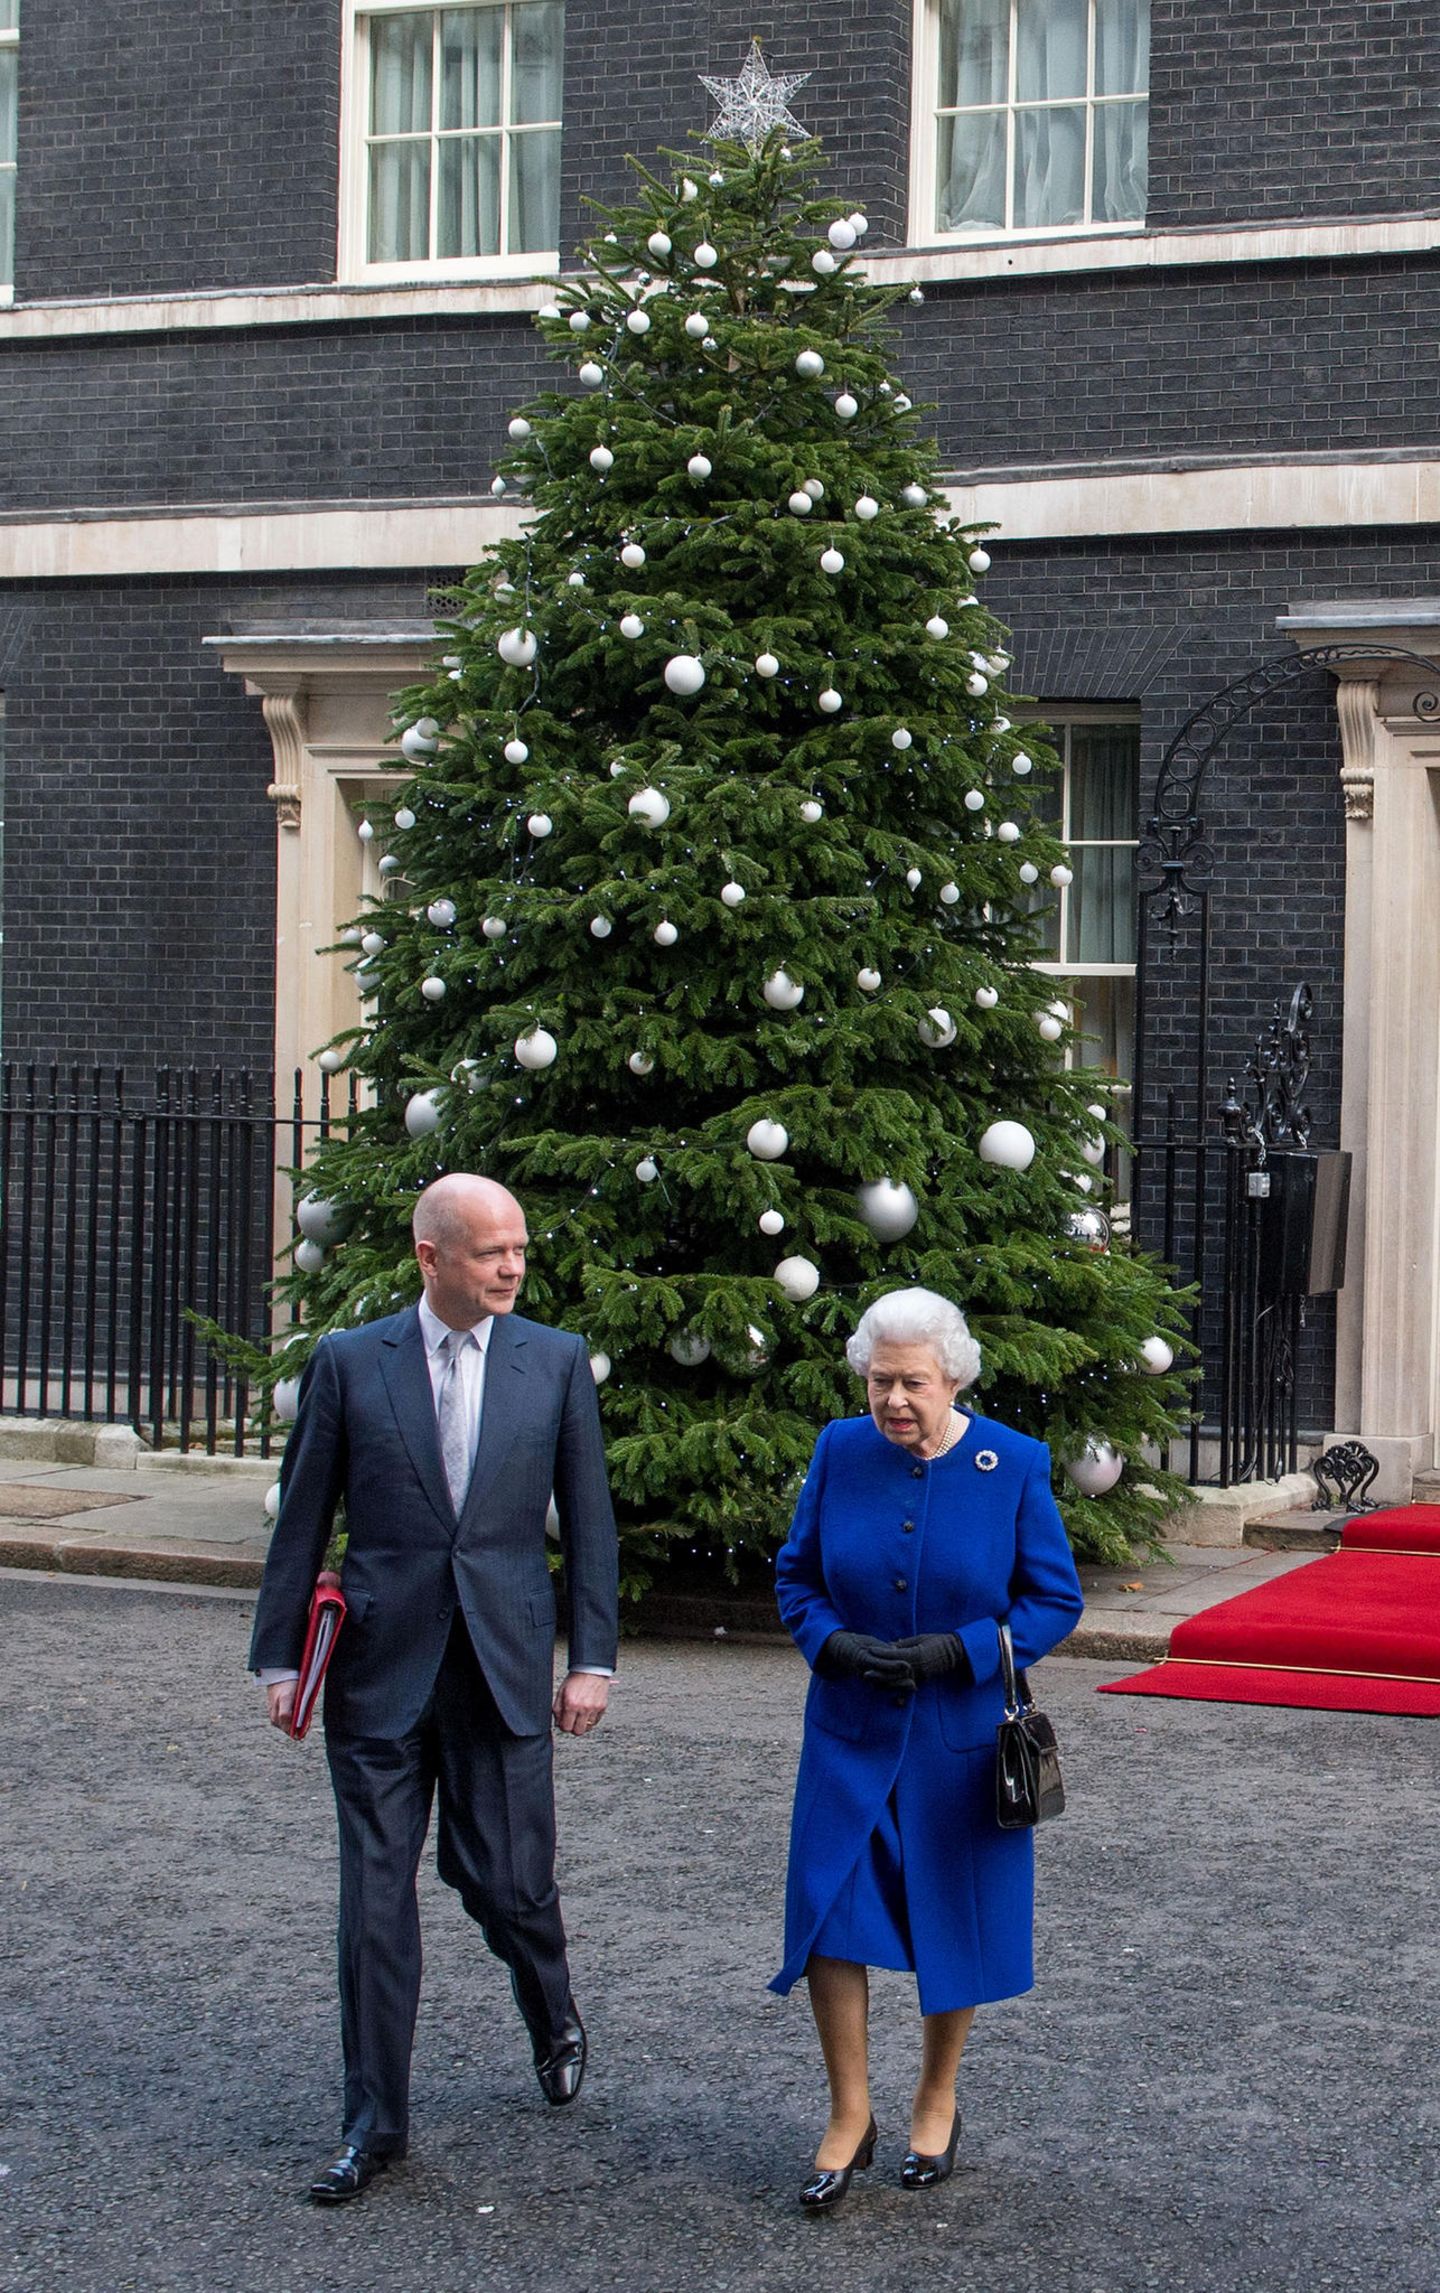 Weihnachten bei den Windsors: Königin Elisabeth II. mit Angestelltem